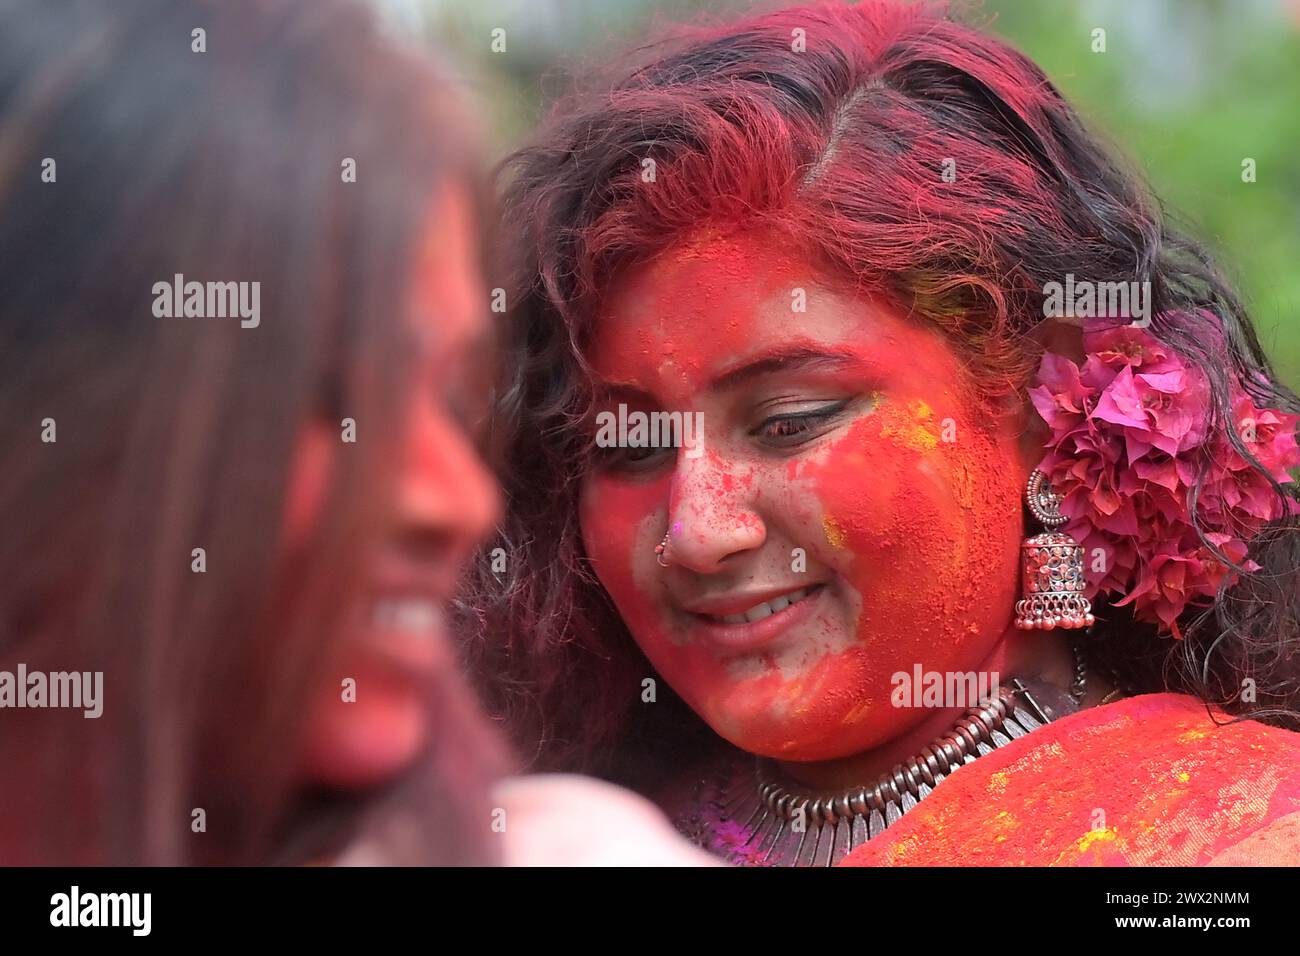 Ragazze indiane adornate con 'Gulal' o polvere colorata durante il festival primaverile indù 'Holi', la festa del colore ad Agartala. Tripura, India. Foto Stock